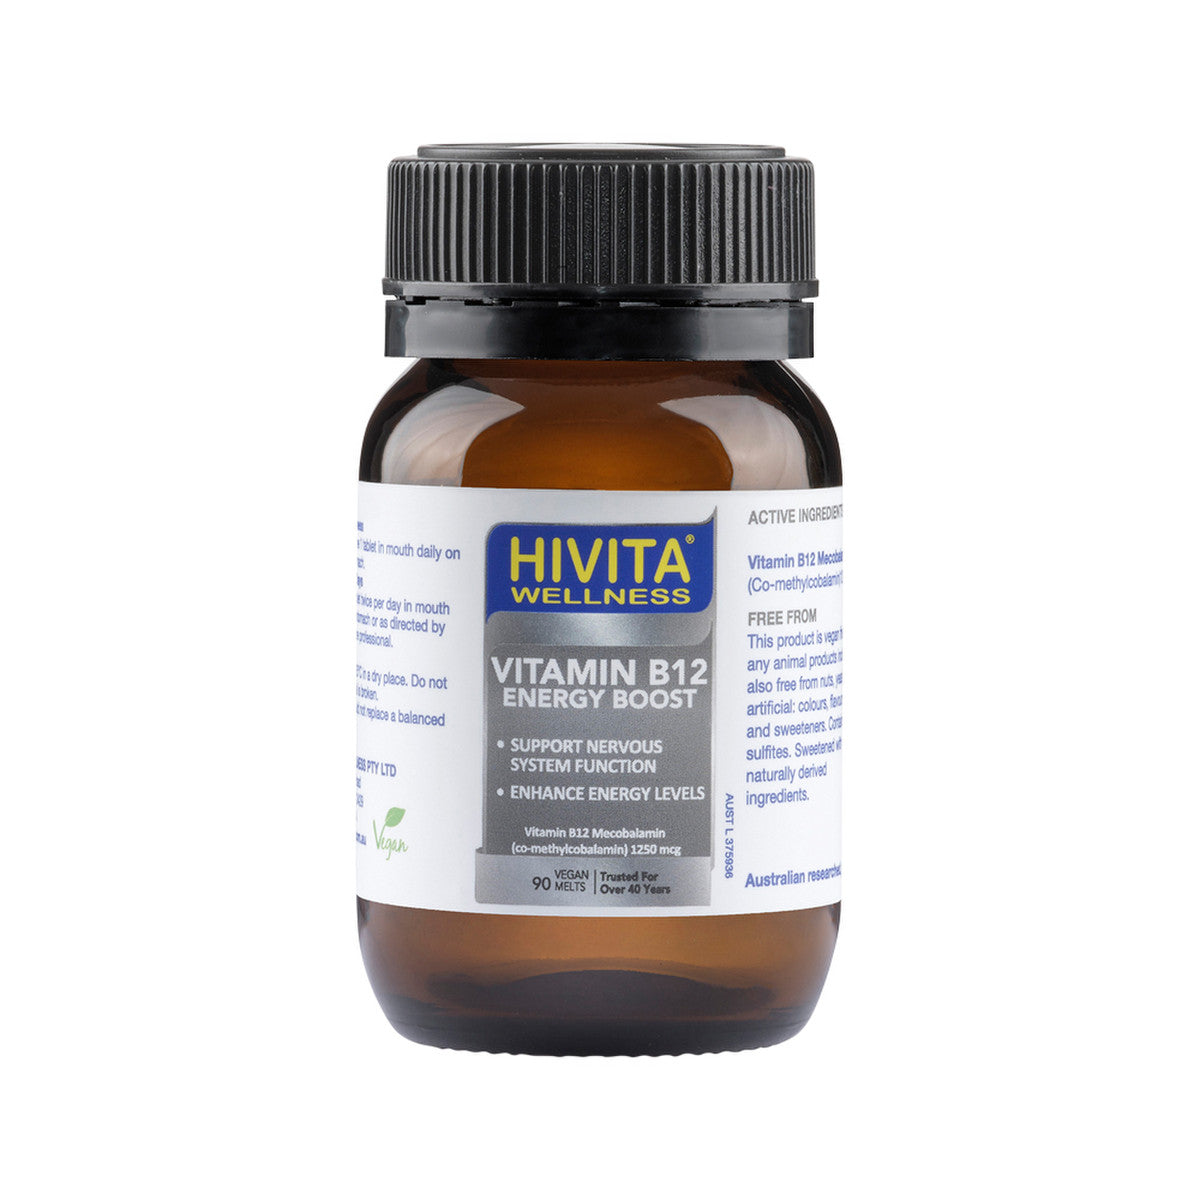 HIVITA WELLNESS Vitamin B12 (Energy Boost) Vegan Melts 90t